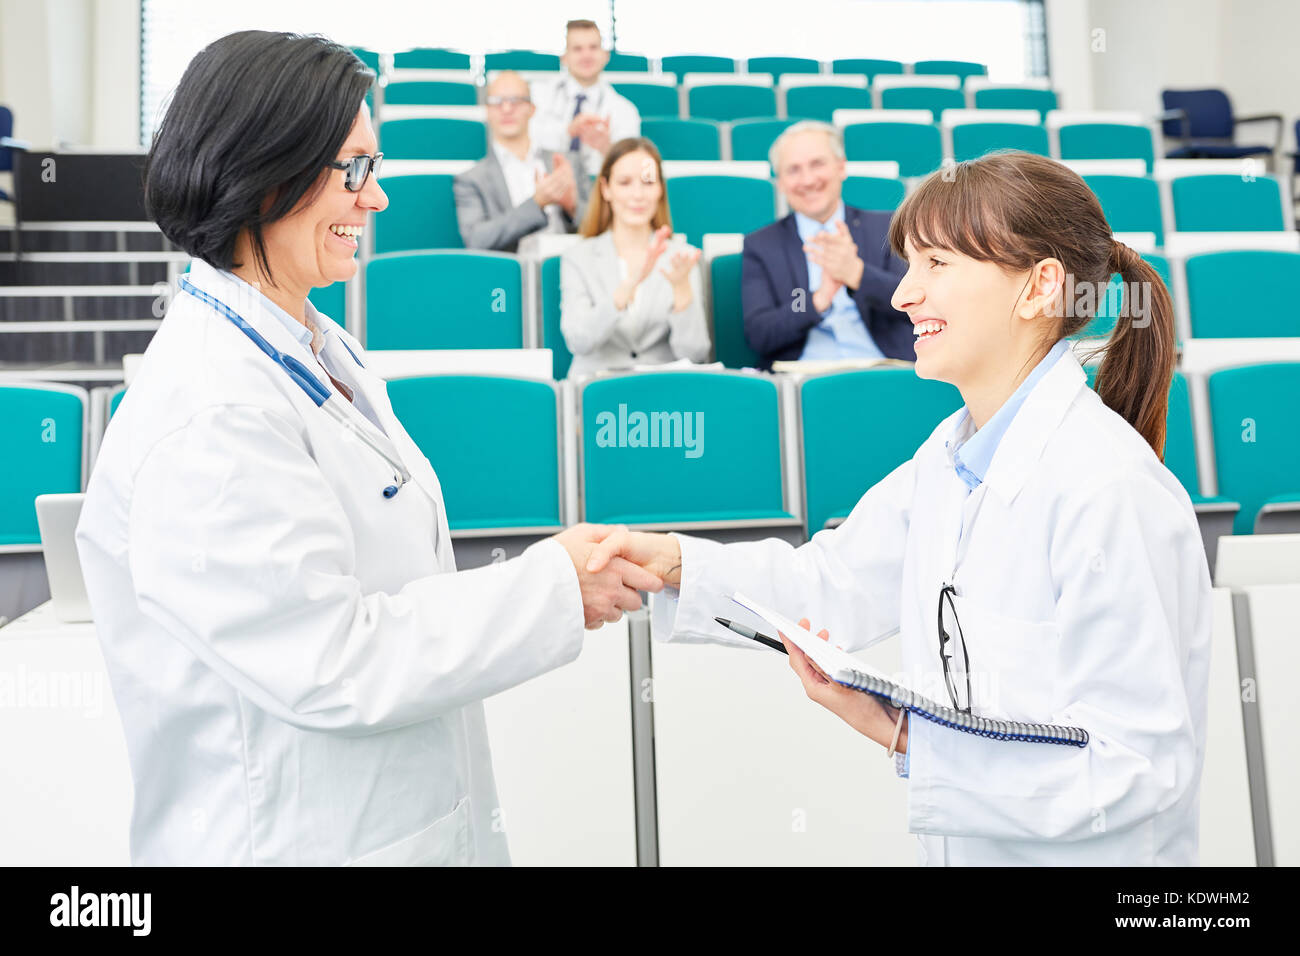 Doctors congratulations handshake between student and teacher Stock Photo